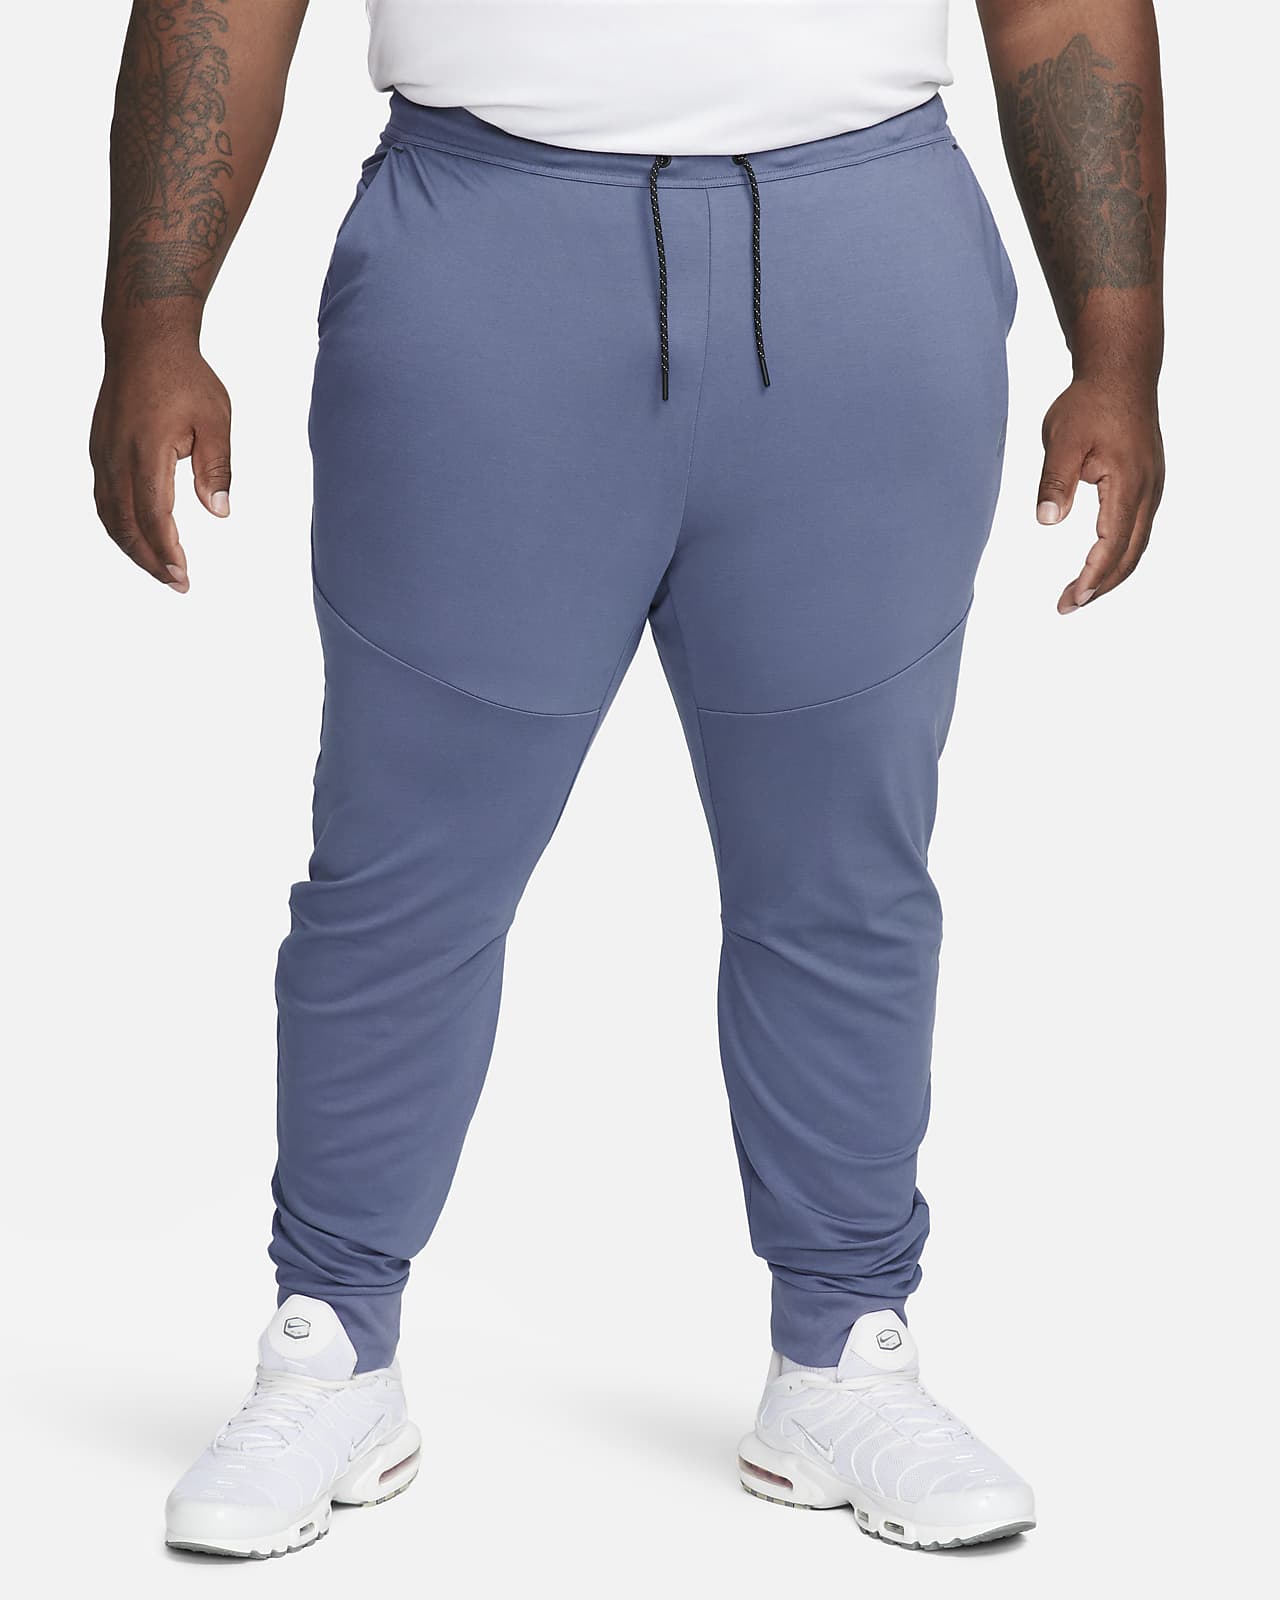 Inspecteur spoel voorraad Nike Sportswear Tech Fleece Lightweight joggingbroek met aansluitende  pasvorm voor heren. Nike NL